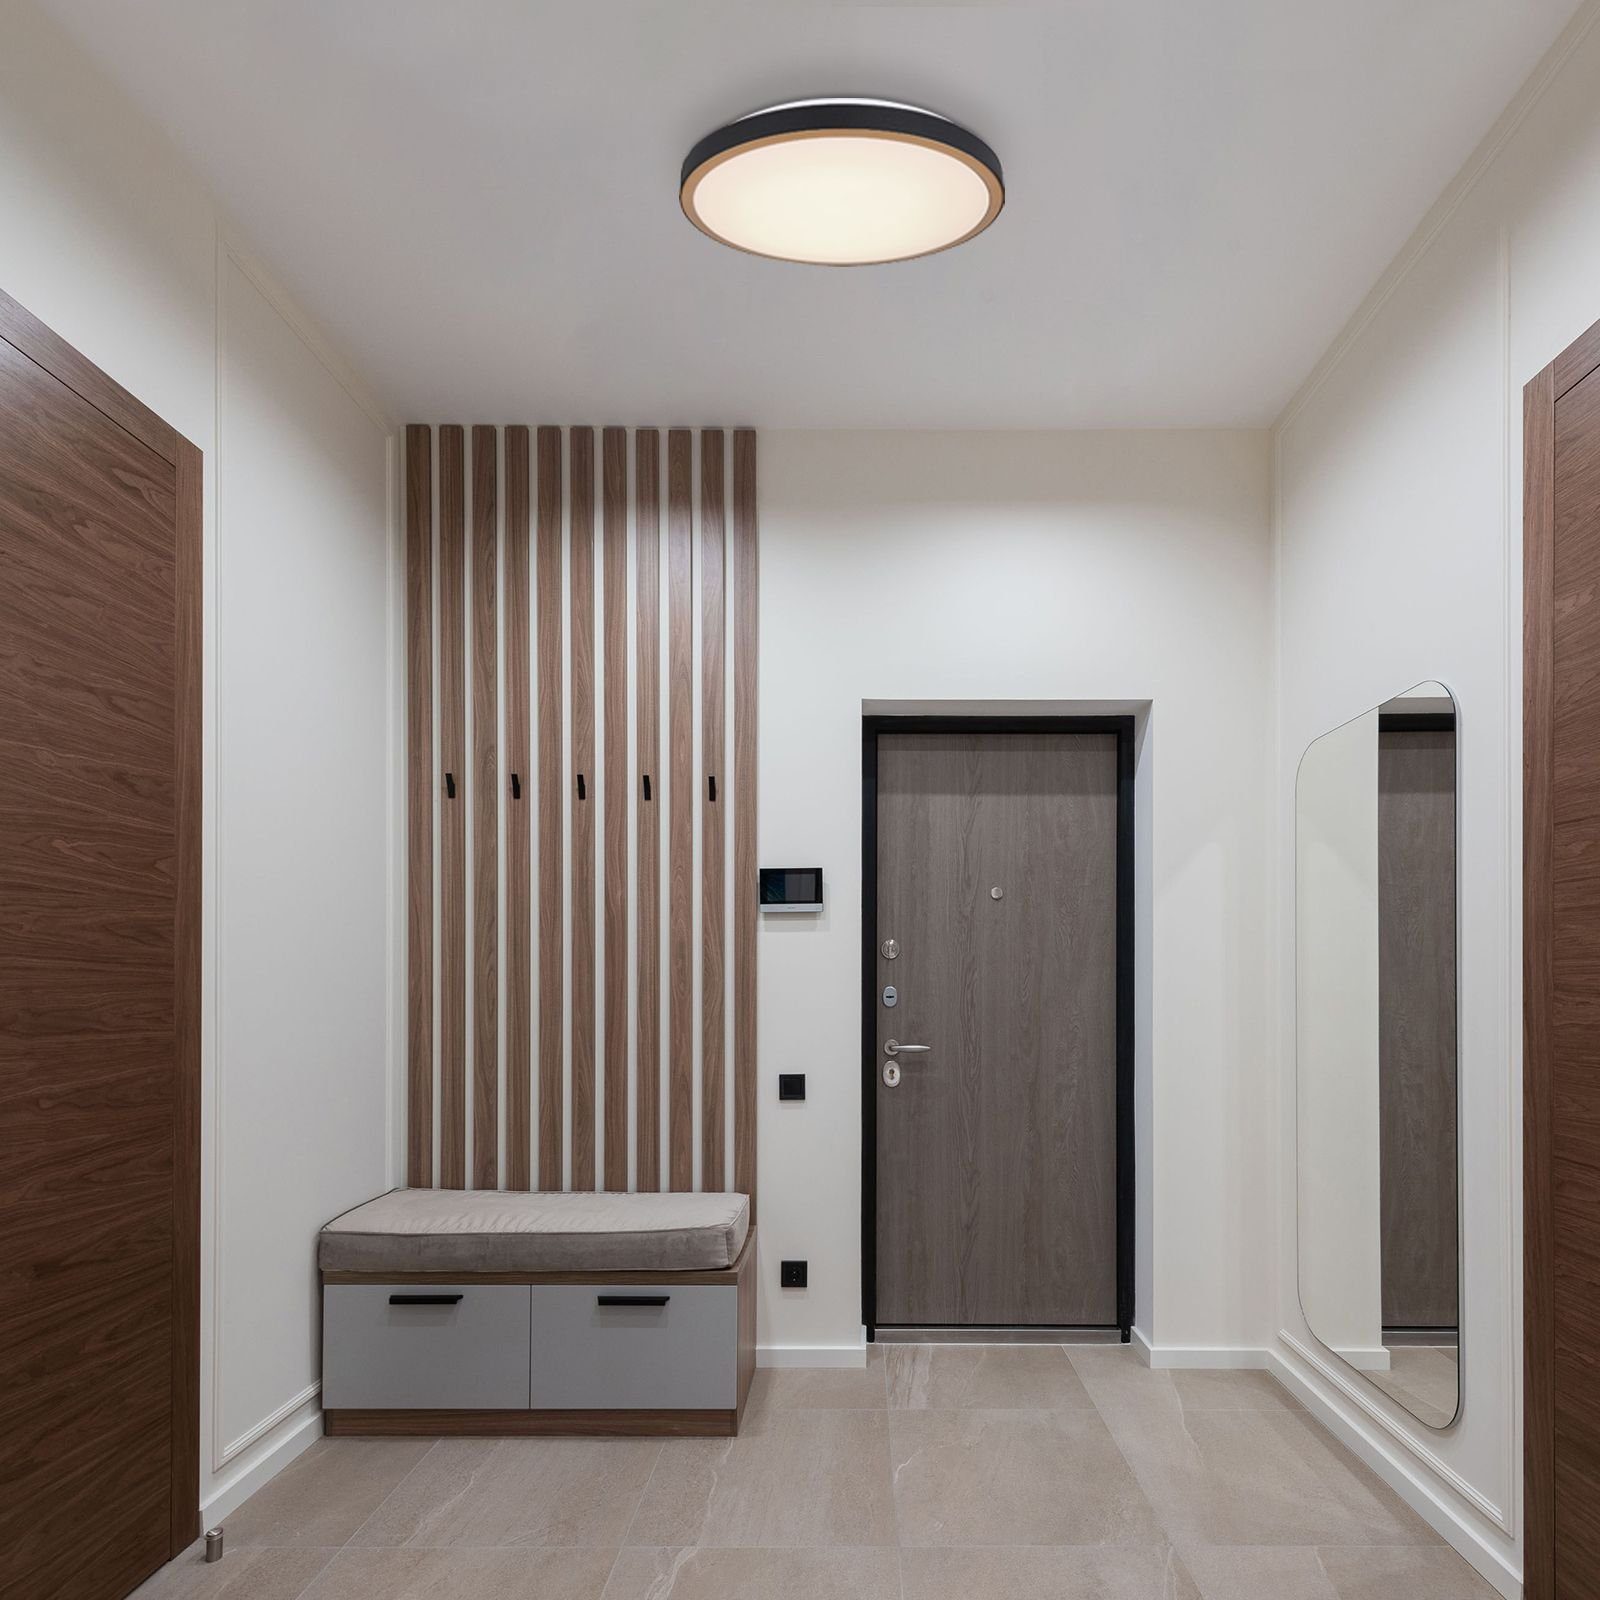 LED Deckenleuchte Wohnzimmer GLOBO Deckenlampe Globo Küche Schlafzimmer Deckenleuchte